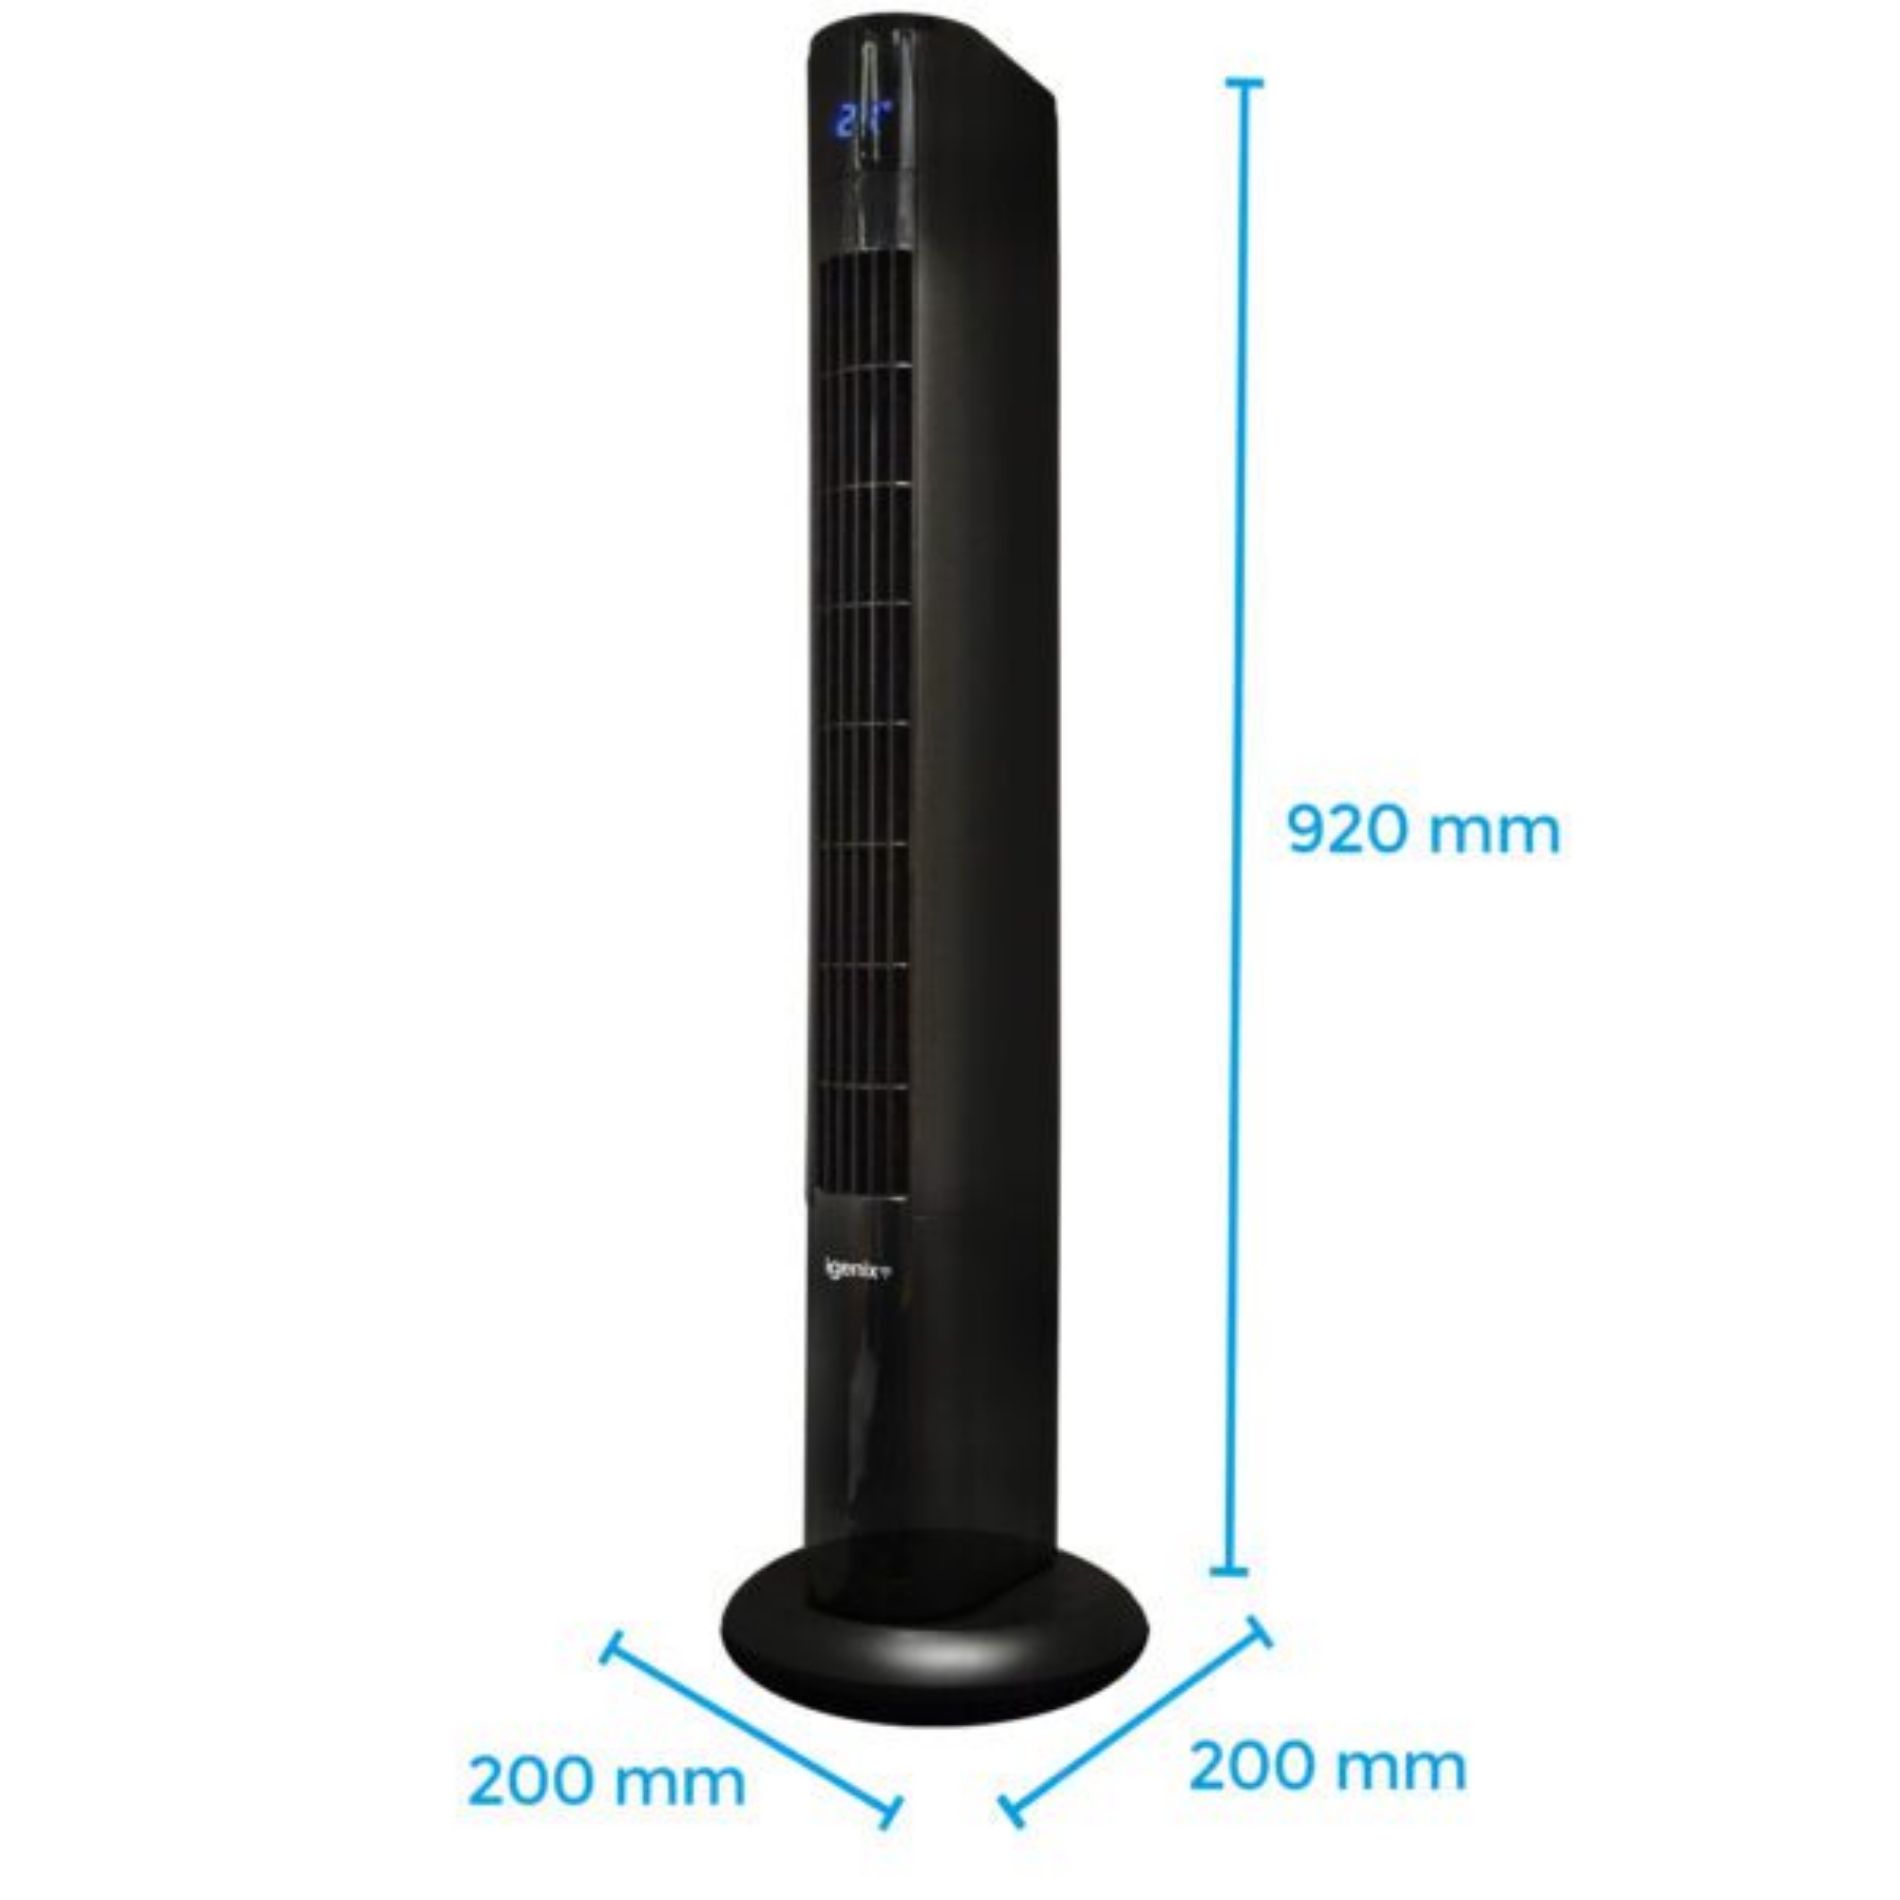 Smart Digital Tower Fan - Dimensions